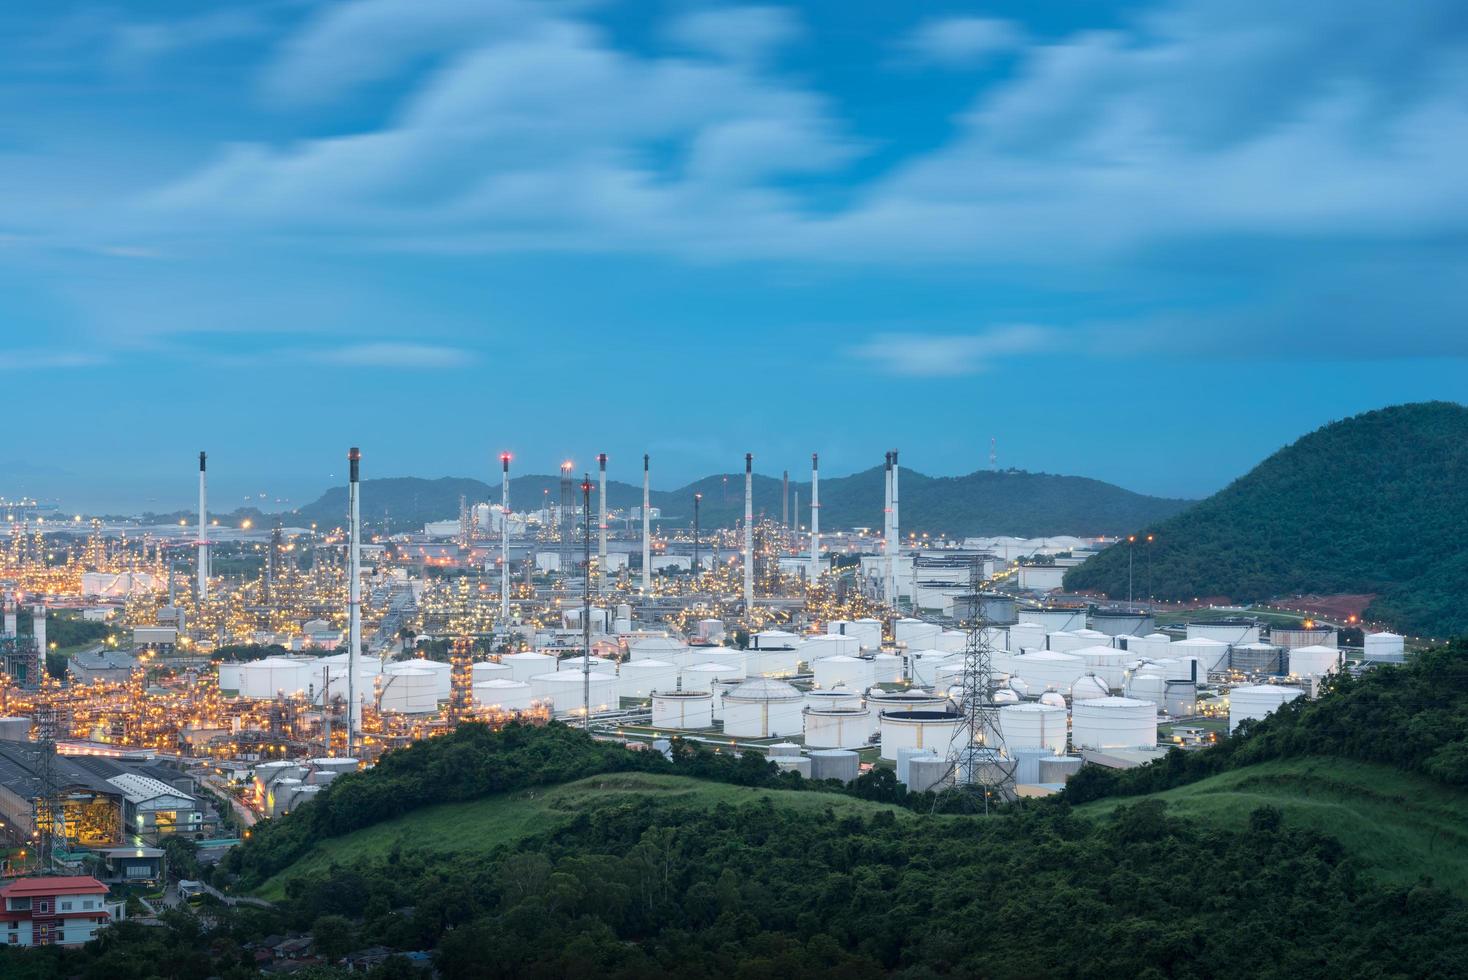 réservoirs d'huile industrielle dans une usine pétrochimique au crépuscule photo